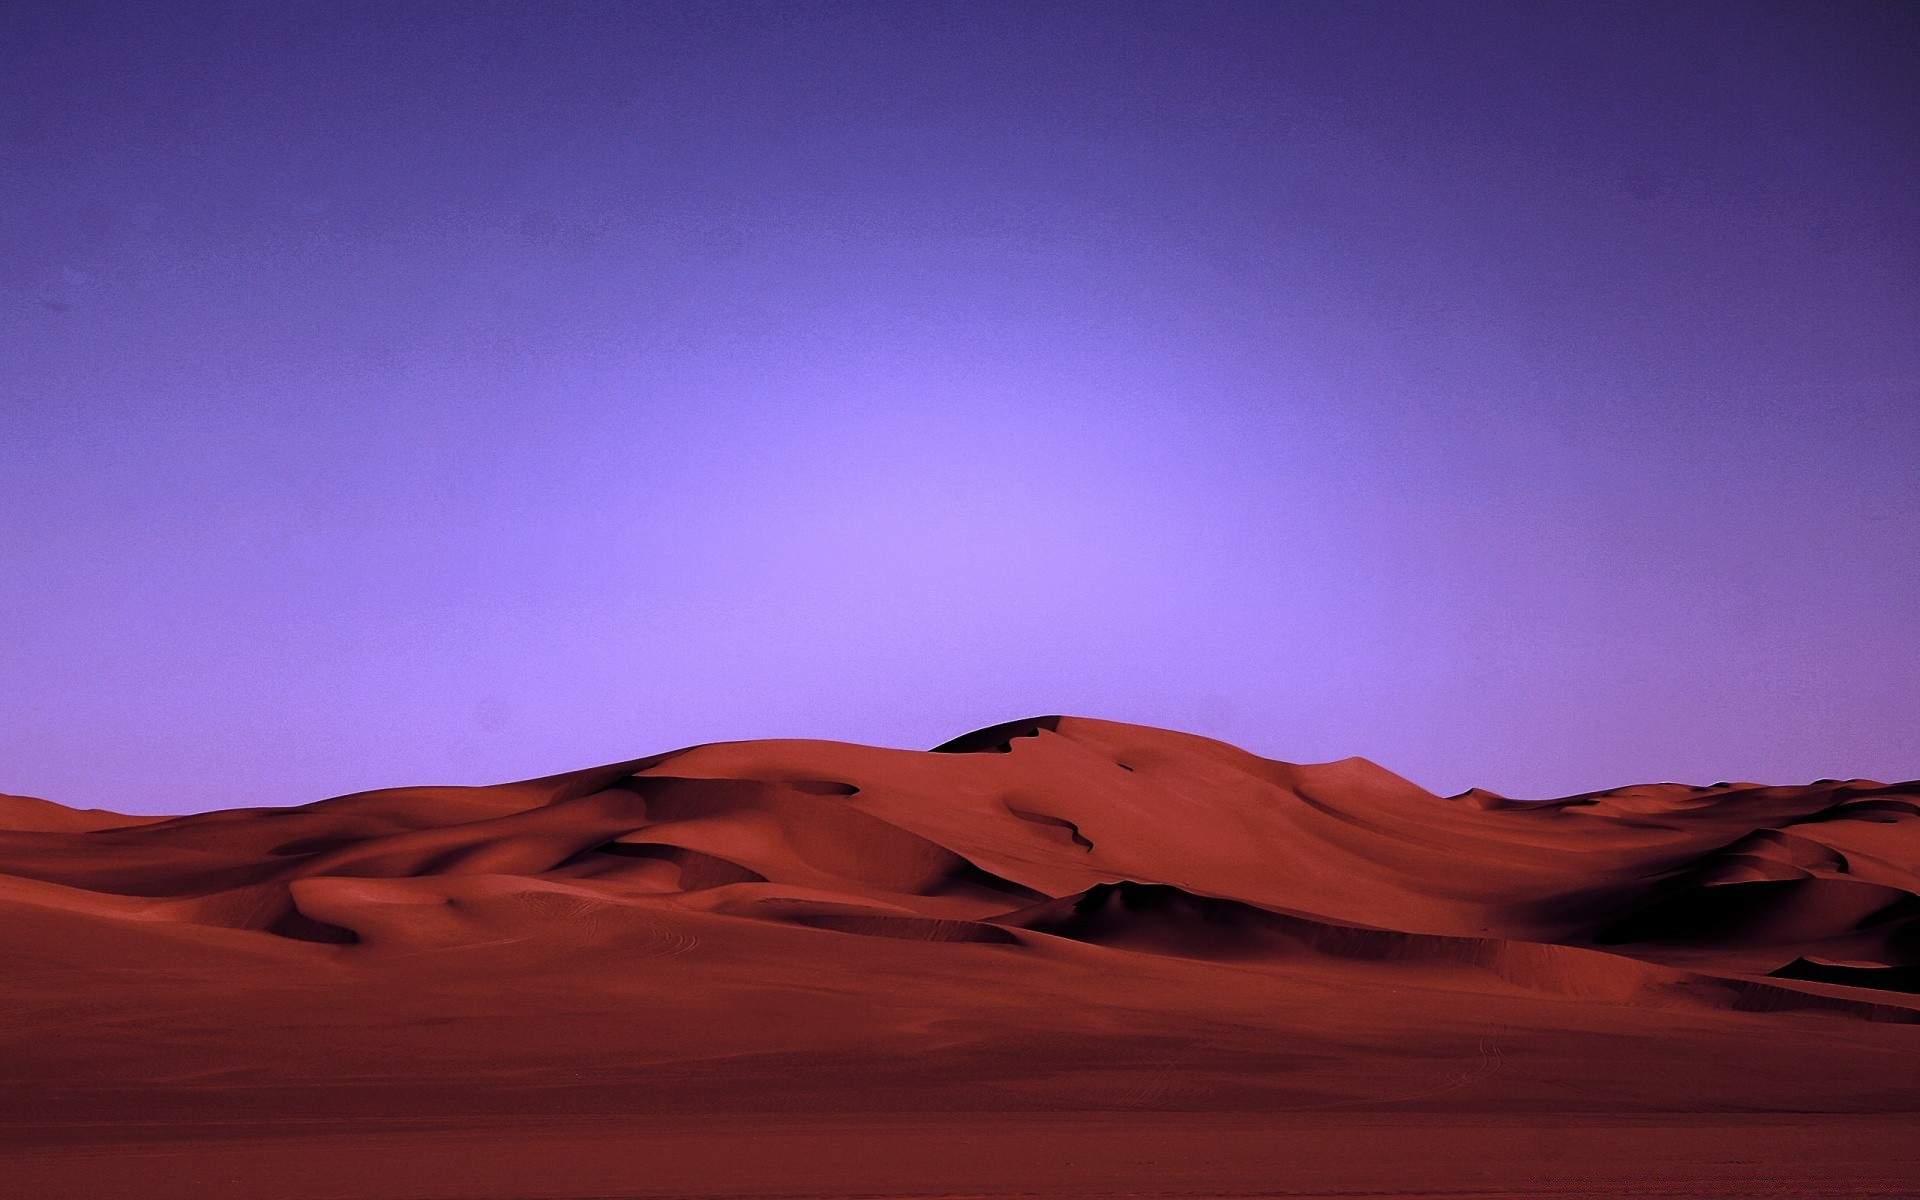 desert sunset dune dawn barren evening arid sky sand outdoors travel hot